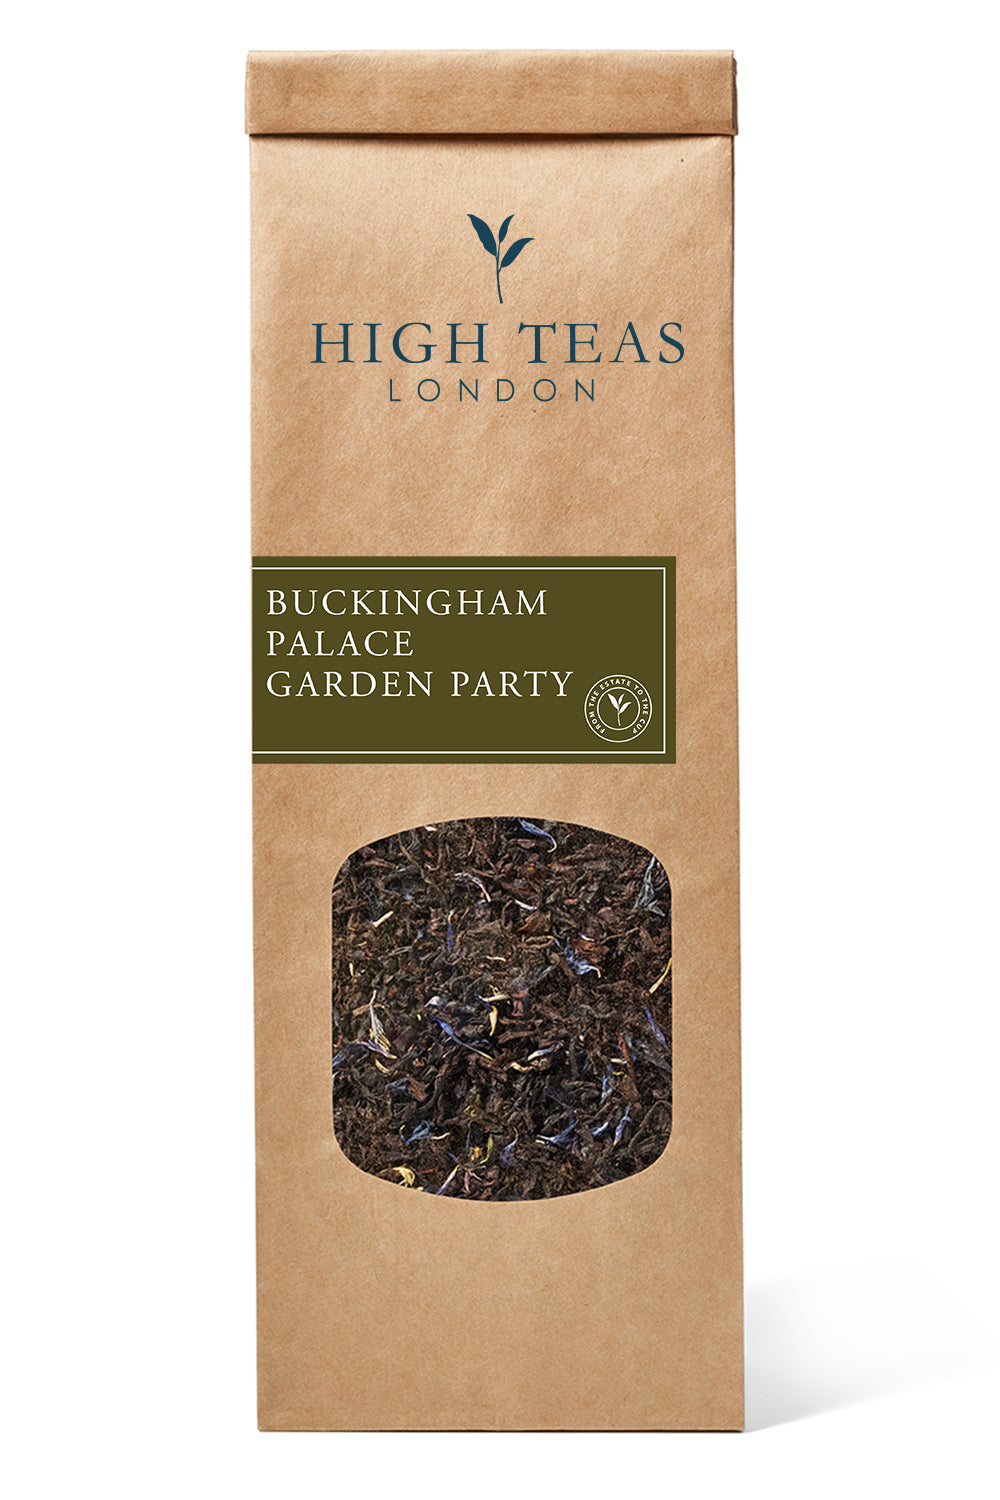 Buckingham Palace Garden Party-50g-Loose Leaf Tea-High Teas